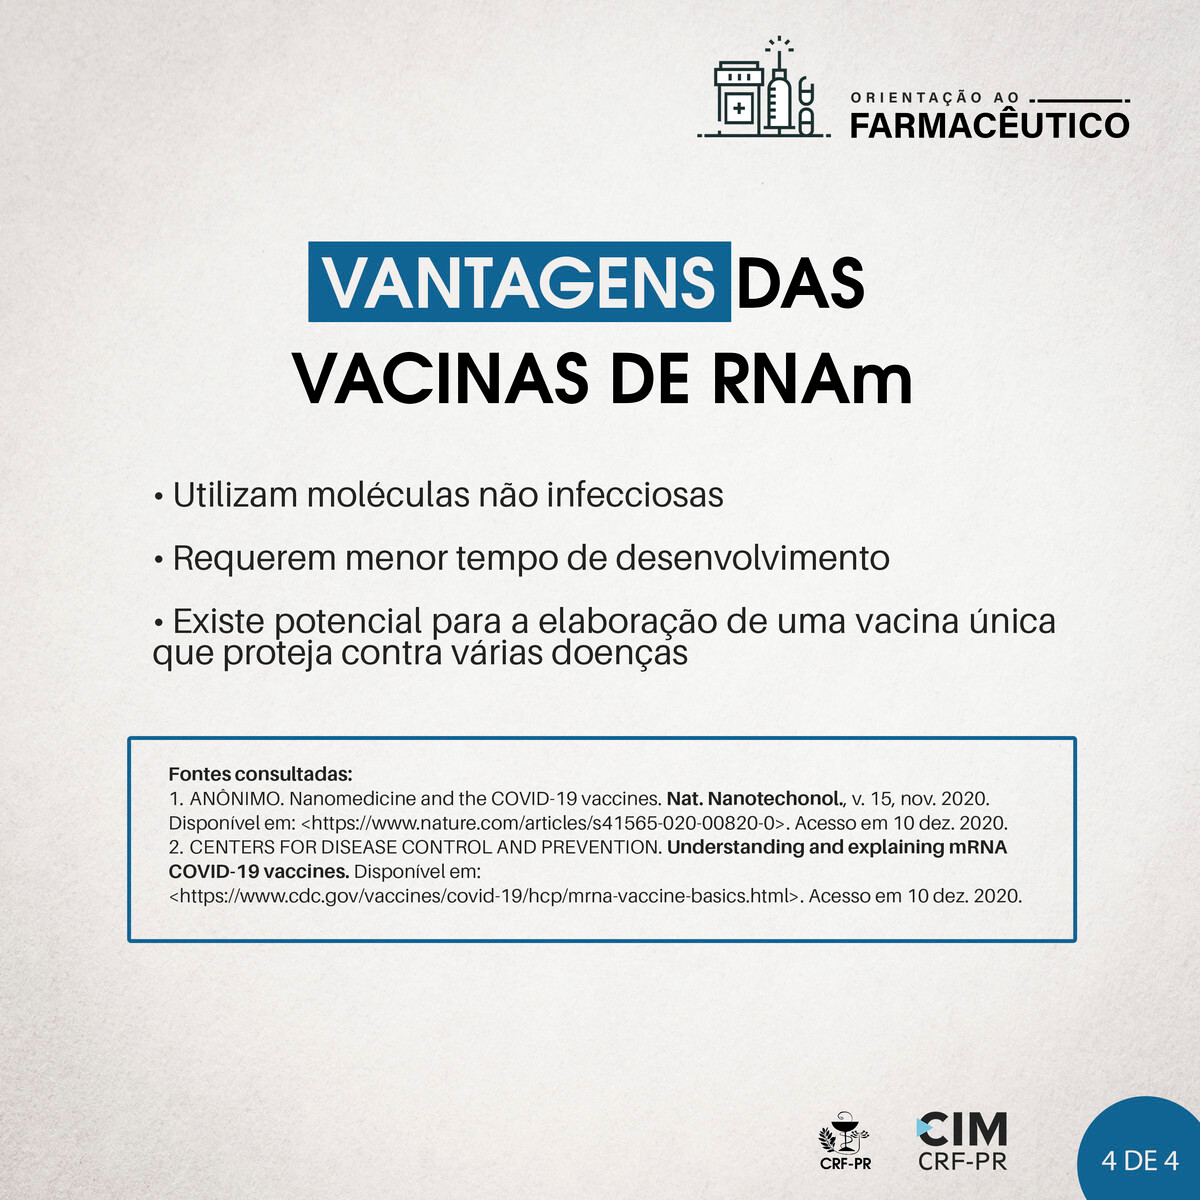 vacinas-de-rnam-contra-a-covid-19